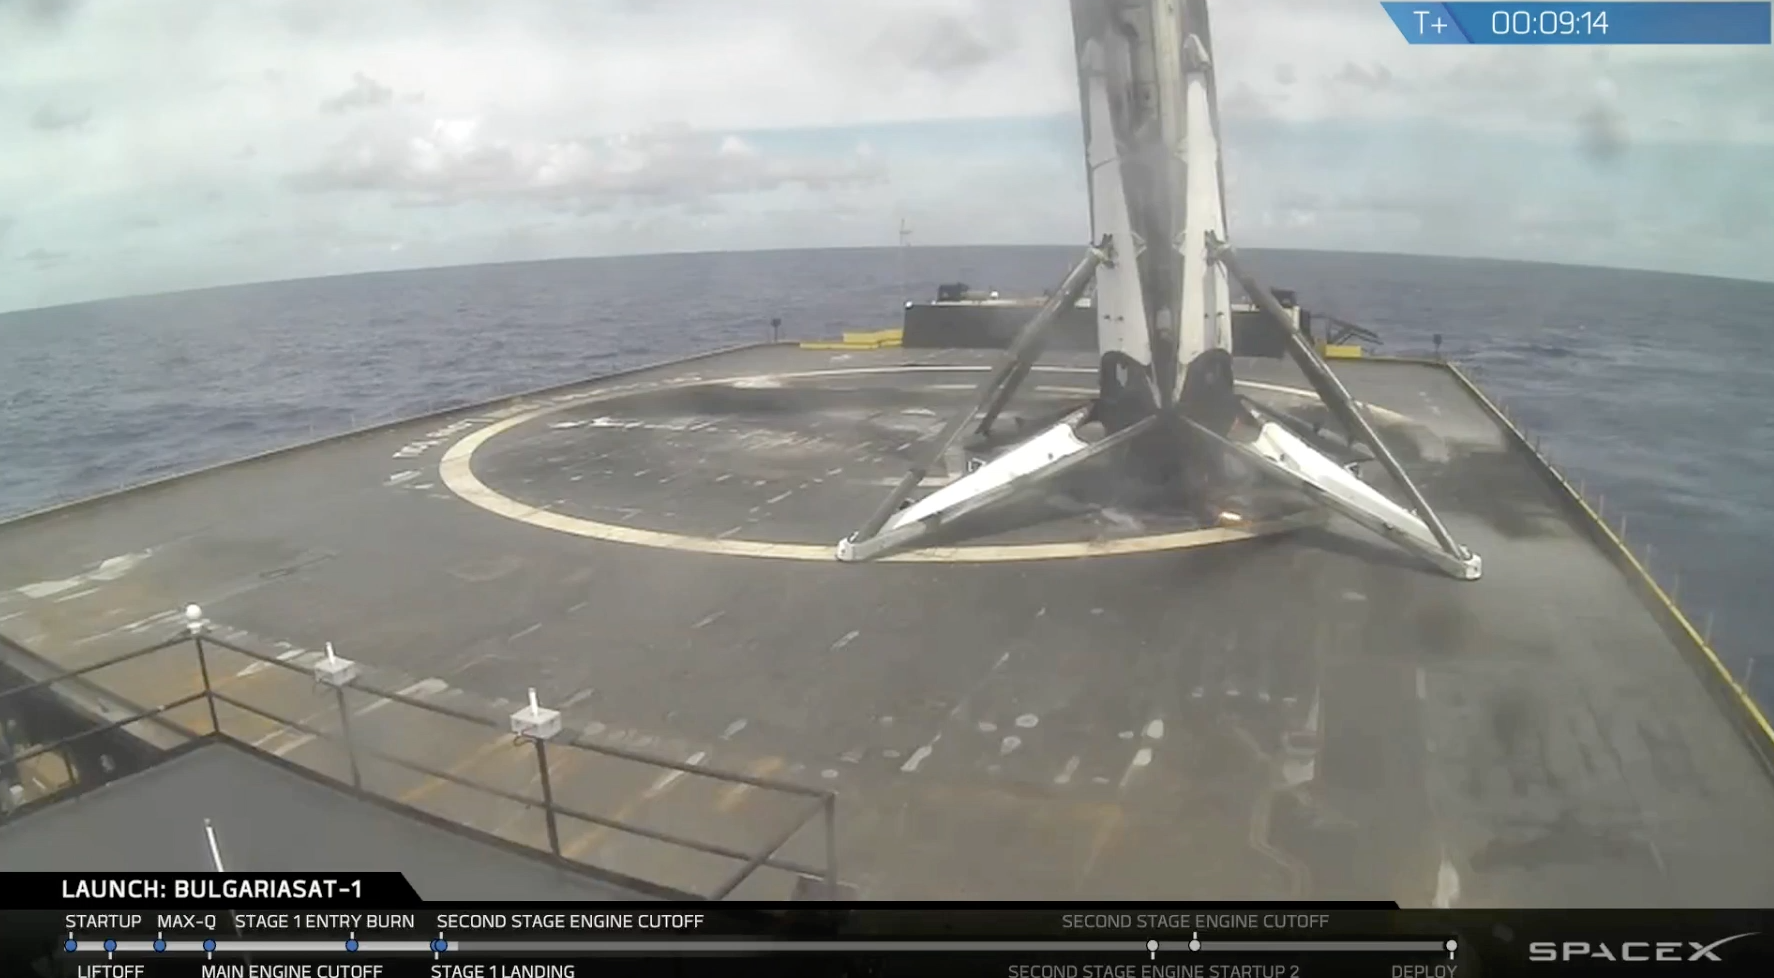 Choć były problemy z transmisją obrazu, a Falcon wylądował odrobinę krzywo, cały lot to kolejna odsłona wyśmienitego spektaklu w wykonaniu SpaceX.